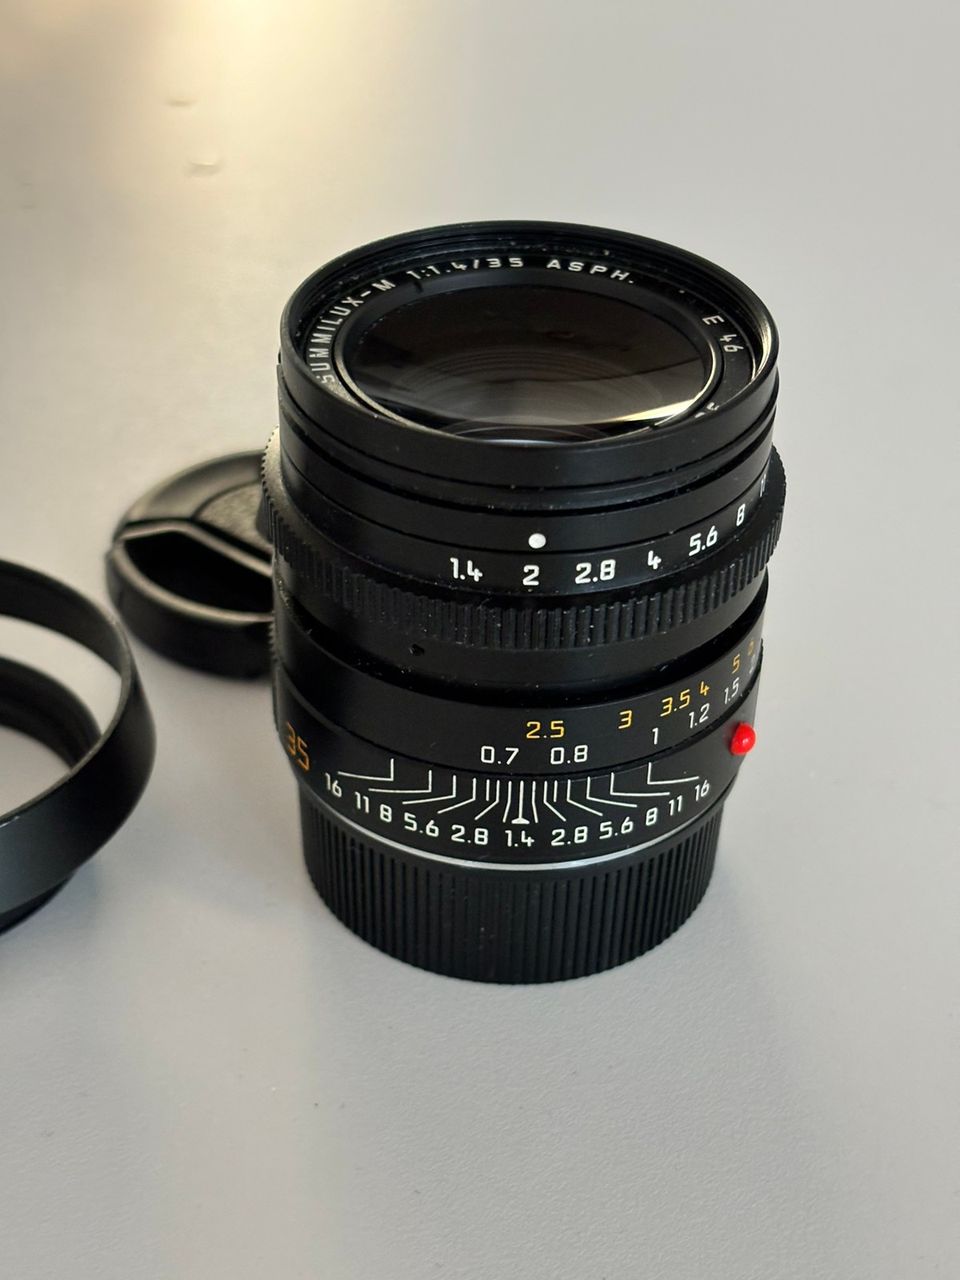 Leica Summilux 1.4 ASPH fle